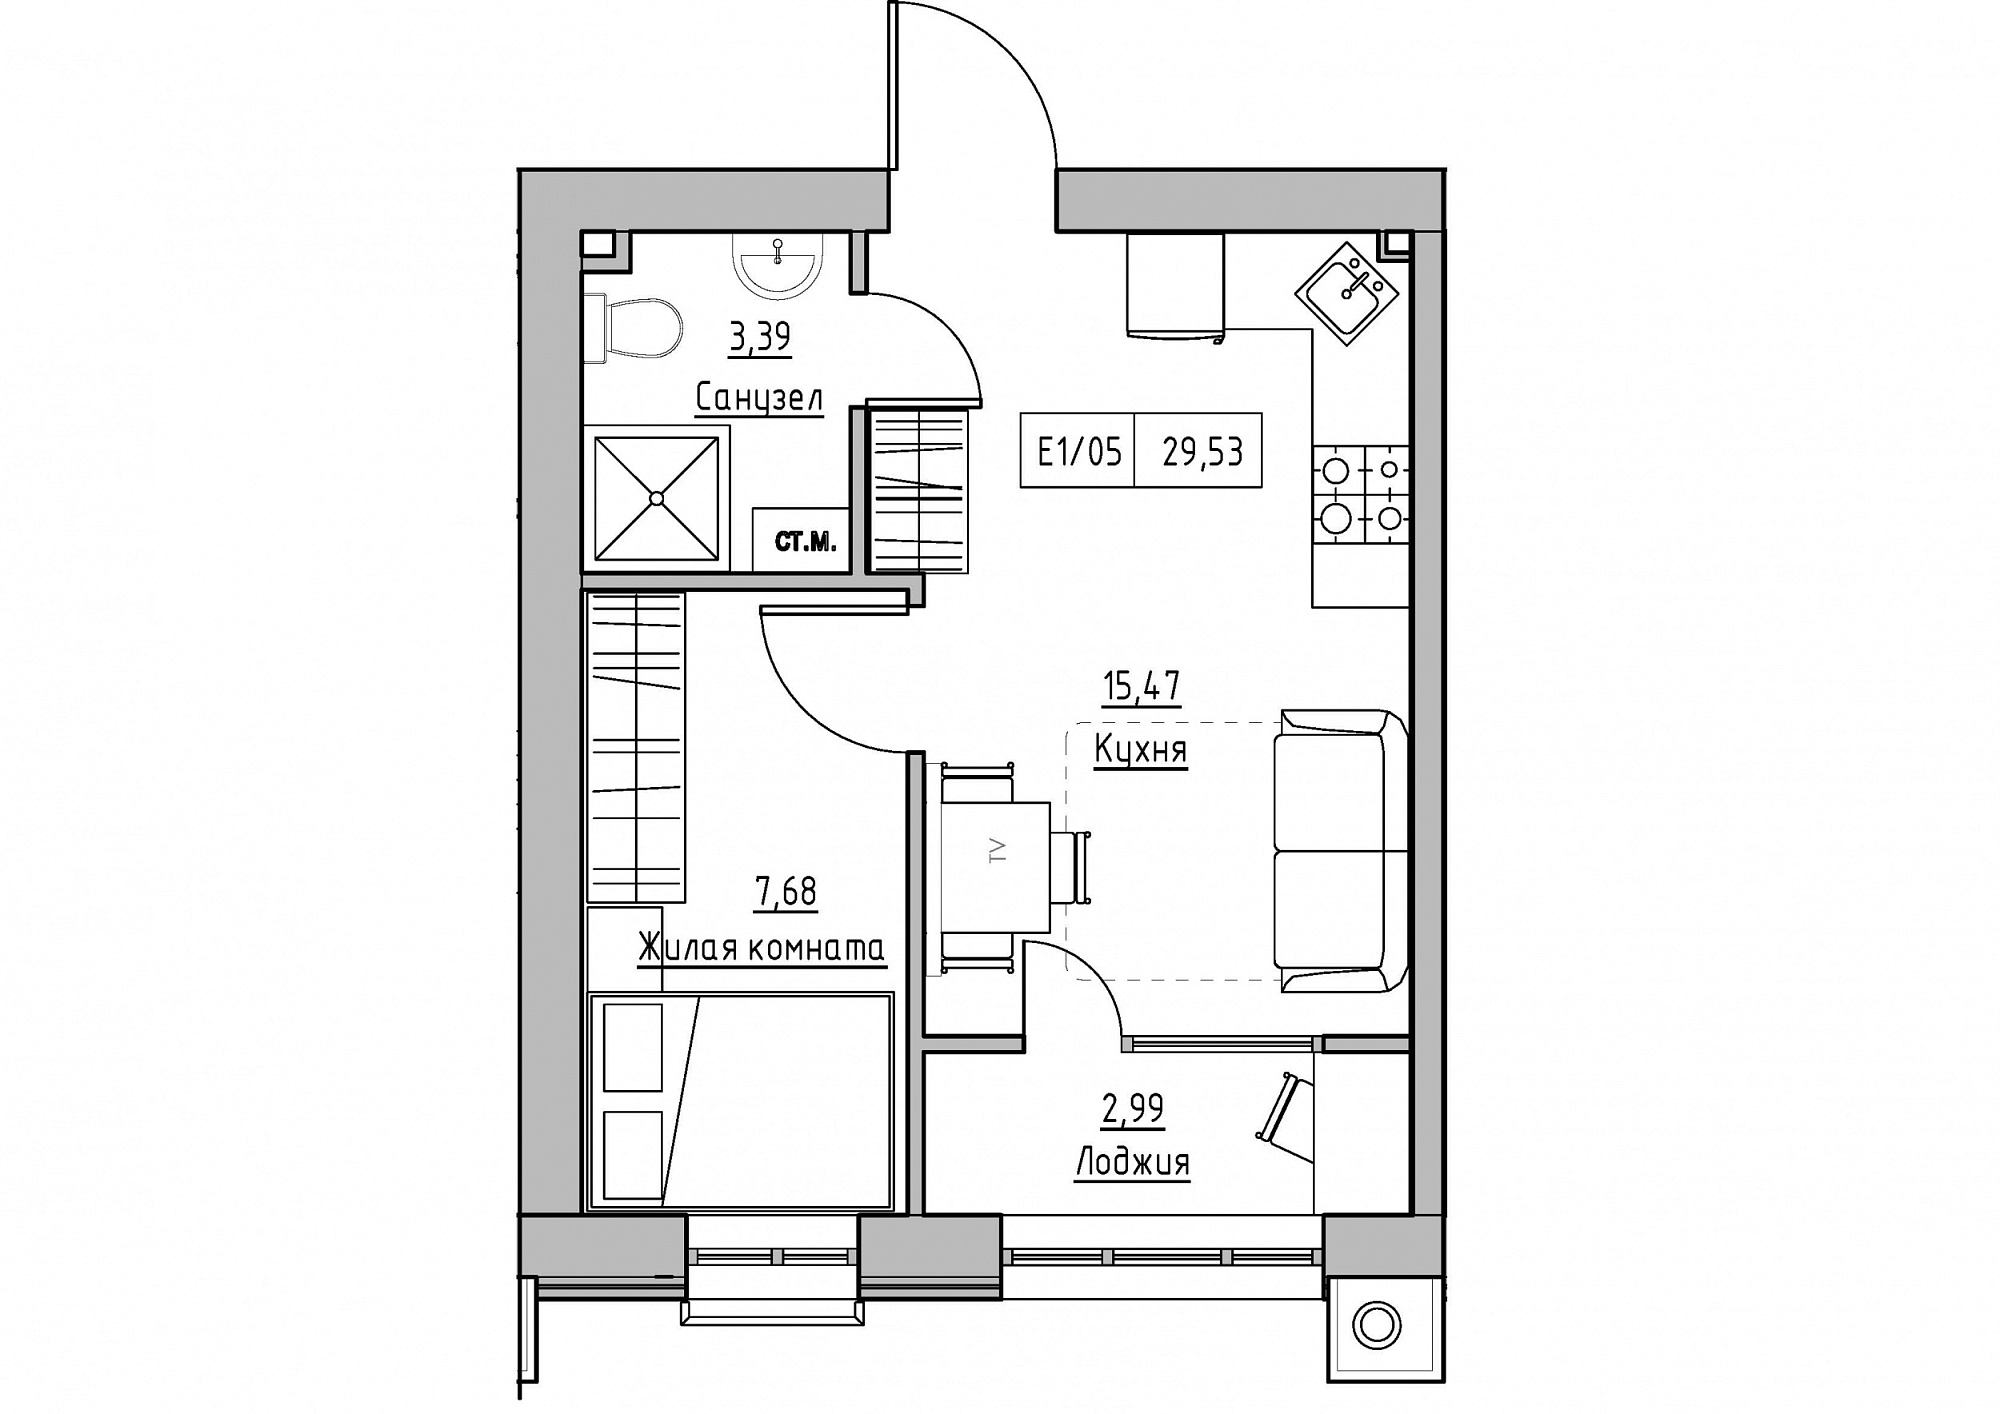 Планування 1-к квартира площею 29.53м2, KS-011-01/0010.